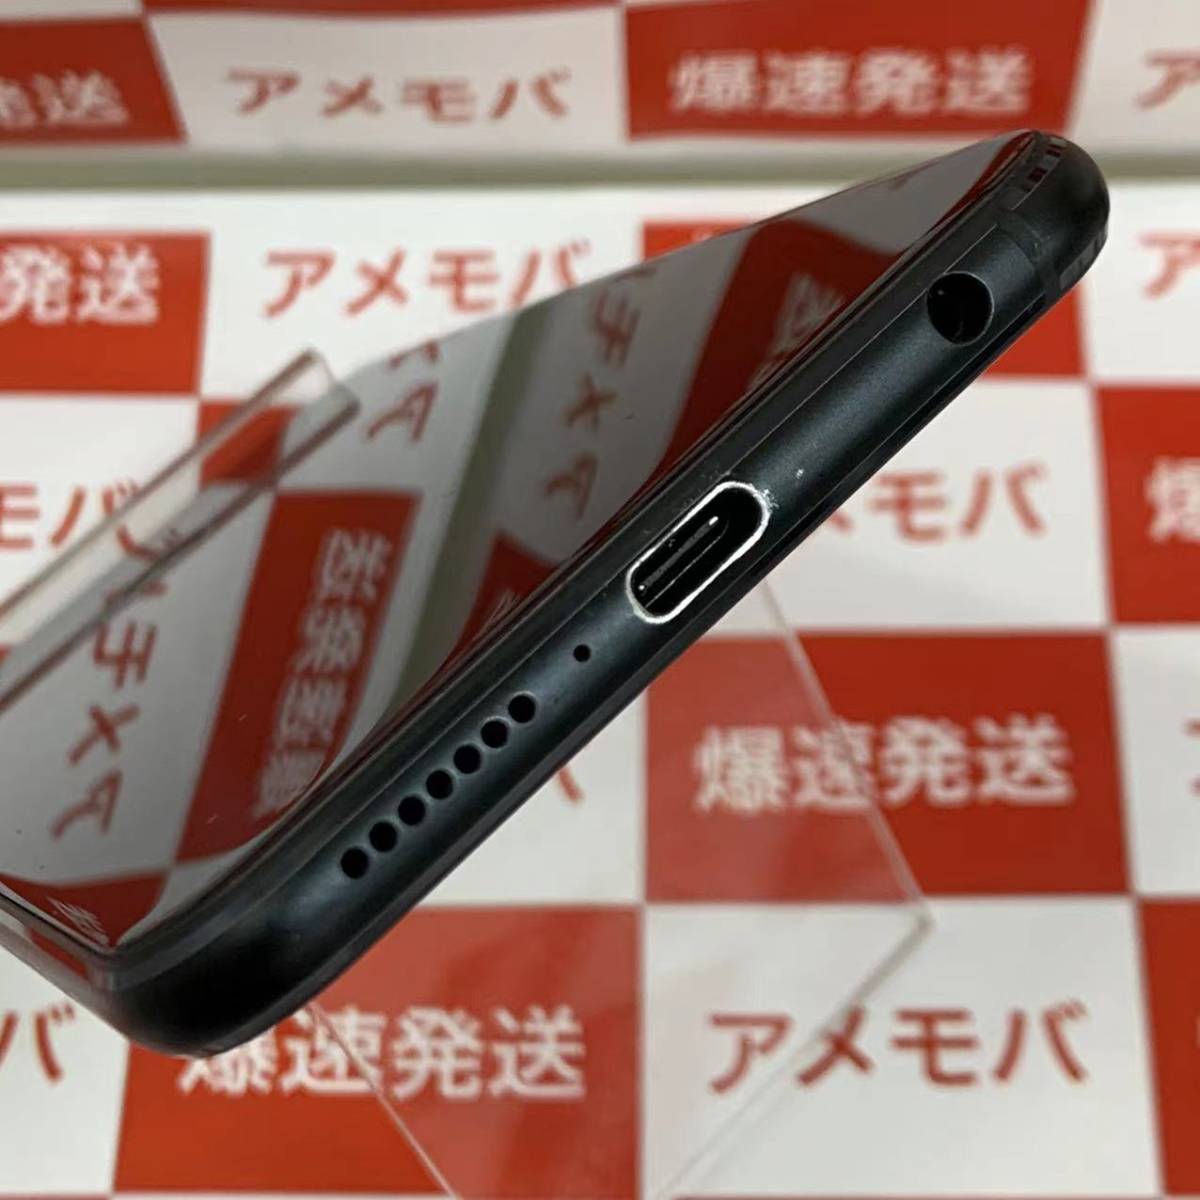 爆速発送 ZenFone 5Z 128GB シャイニーブラック 本体のみ SIMフリー ...